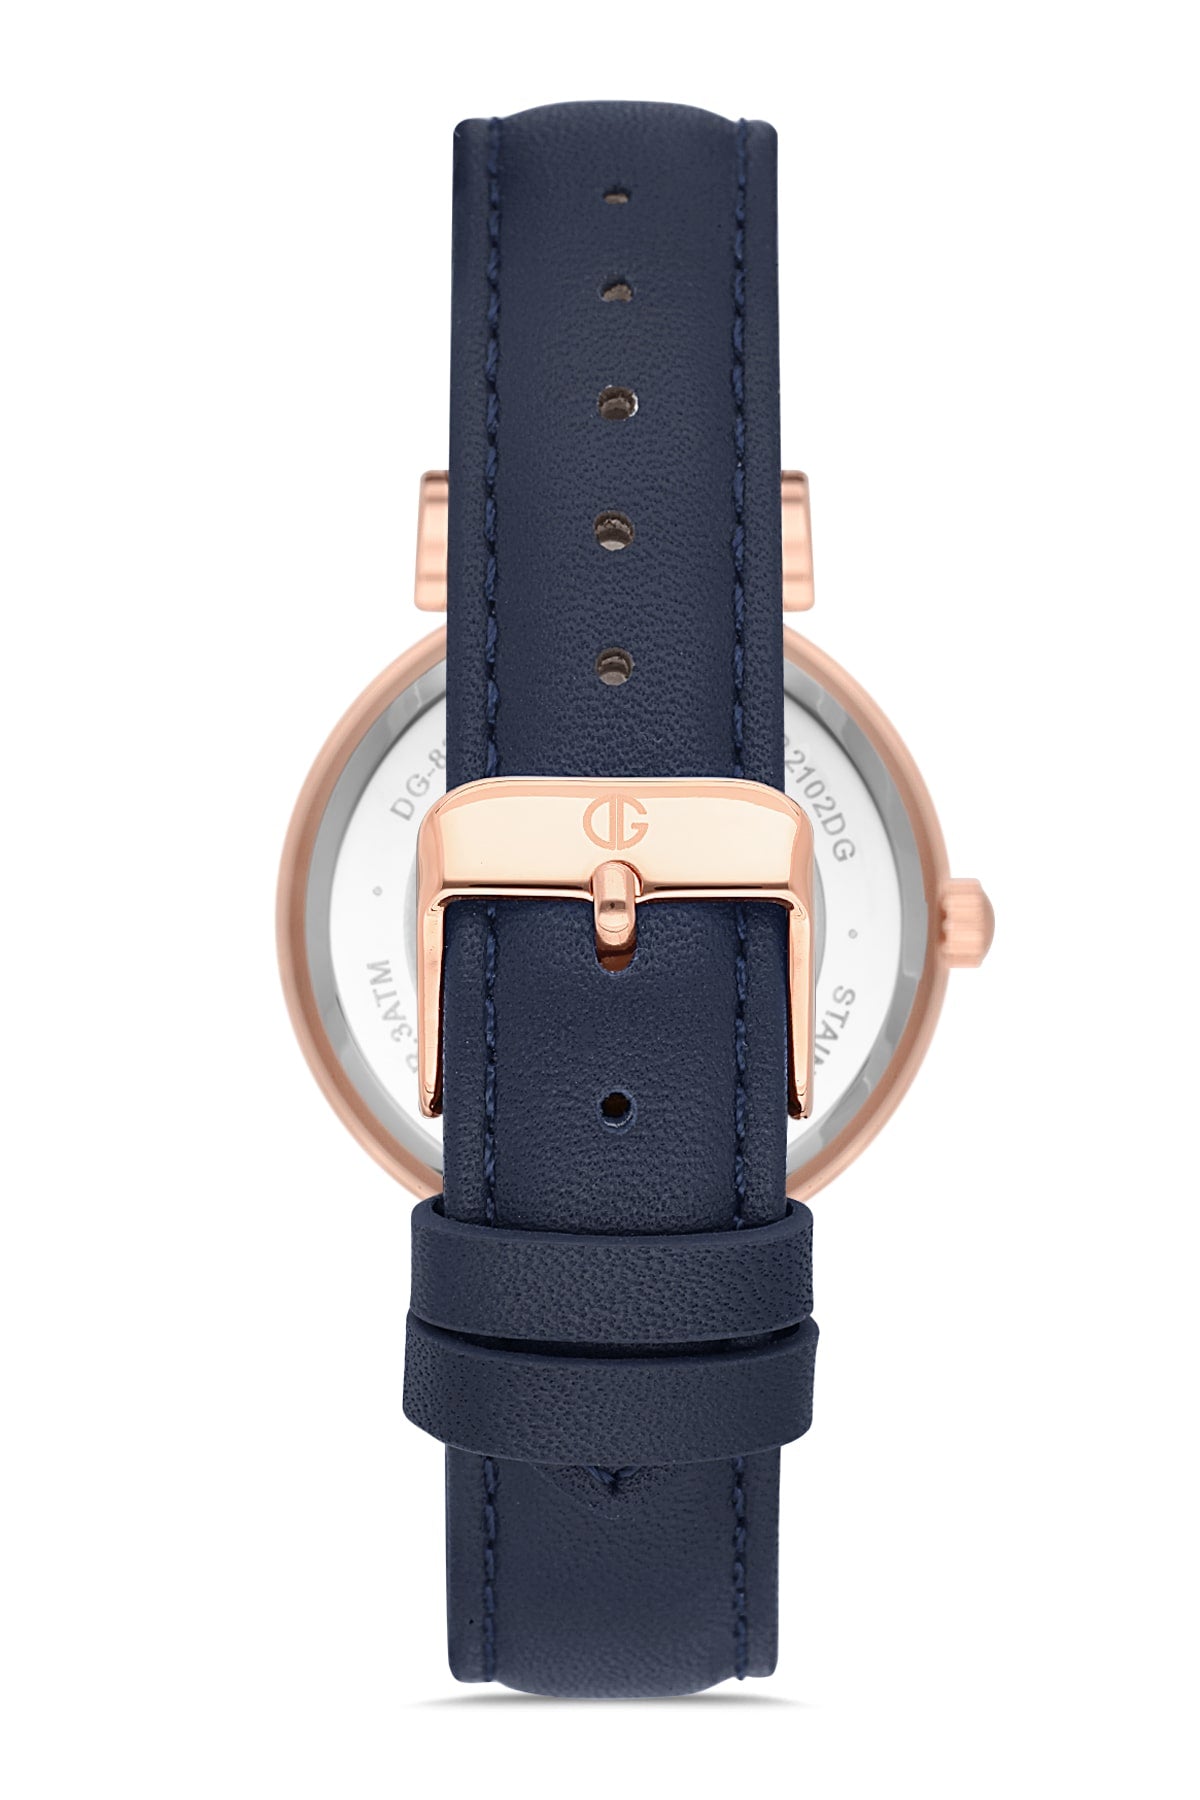 DAVID GUNER Dark Blue Leather Strap Women's Wristwatch